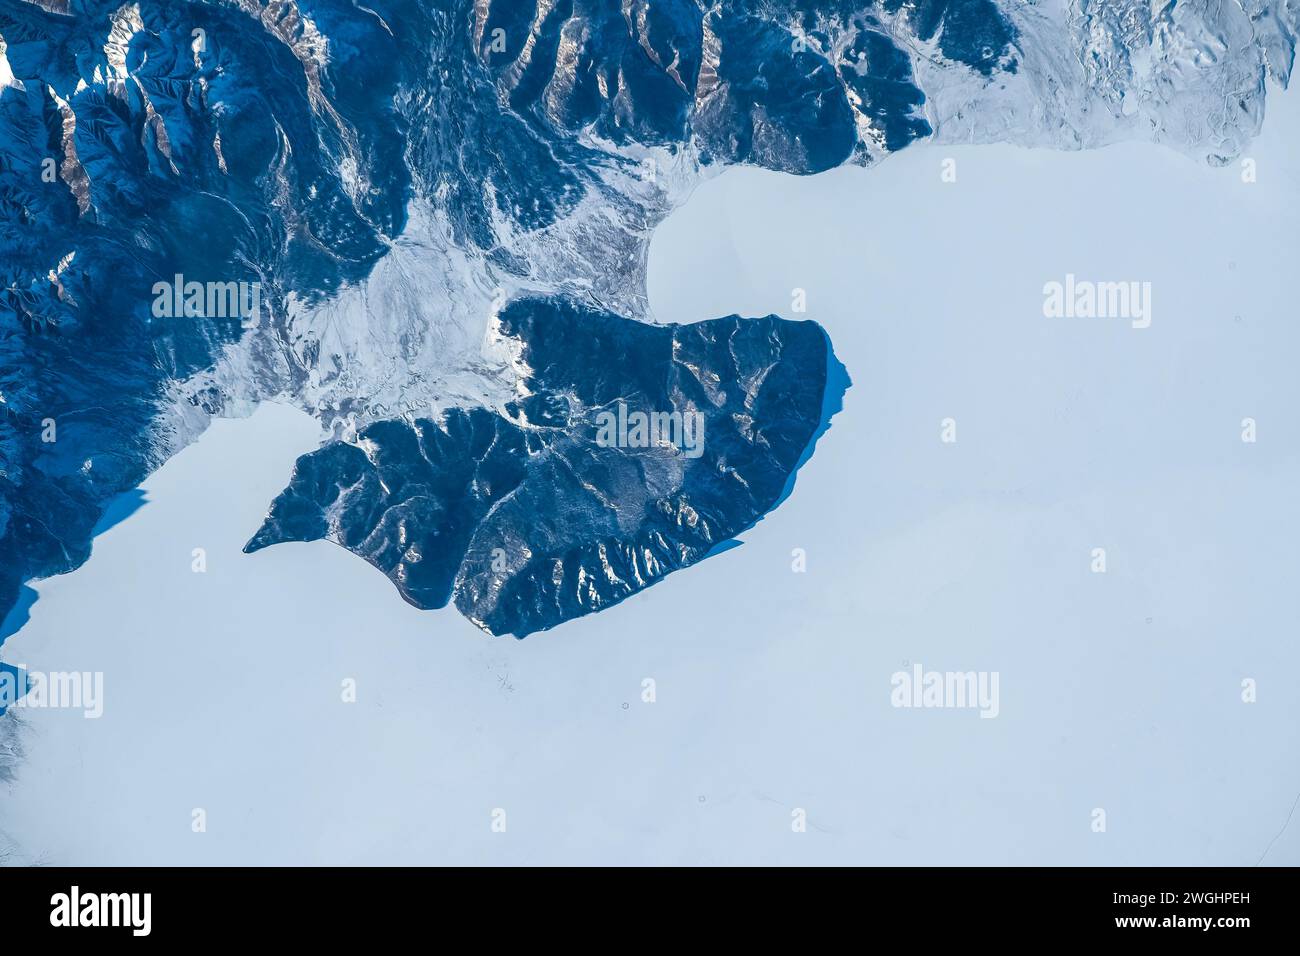 Land terrain feature landscape, winter snow, mongolia Stock Photo